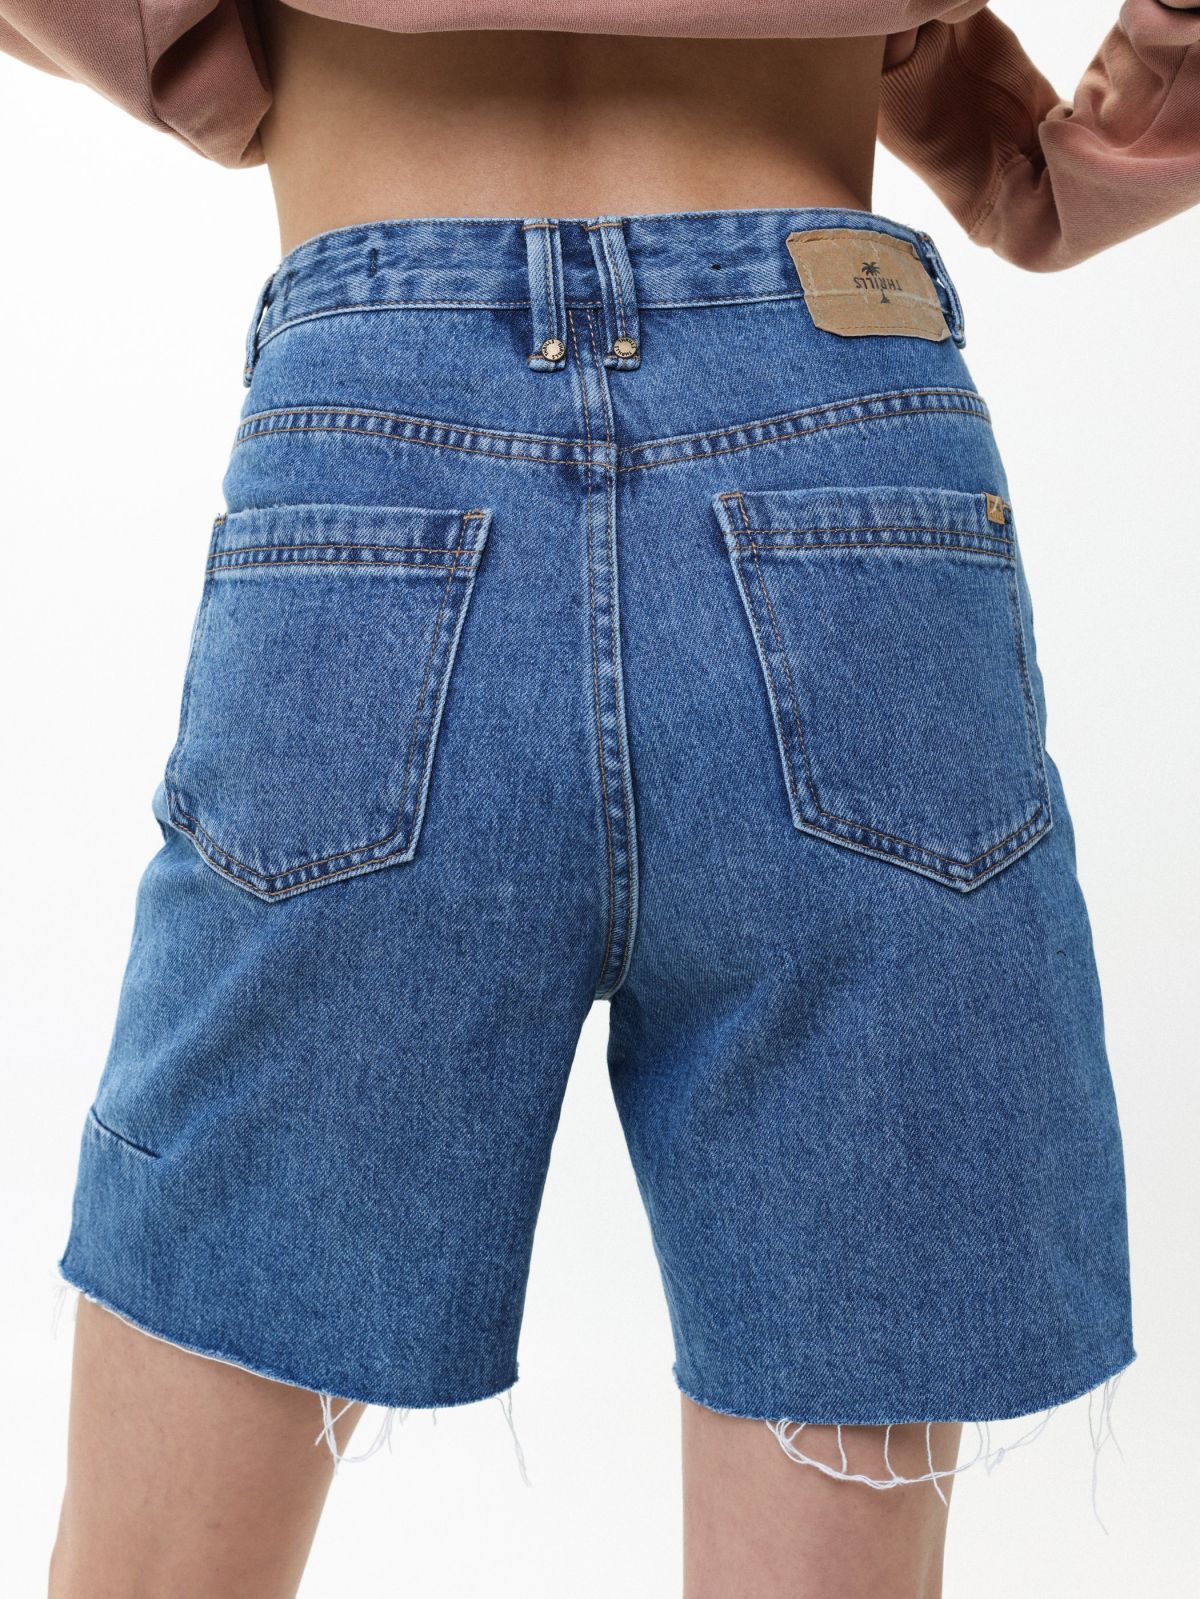  מכנסי ג'ינס קצרים עם סיומת גזורה של THRILLS